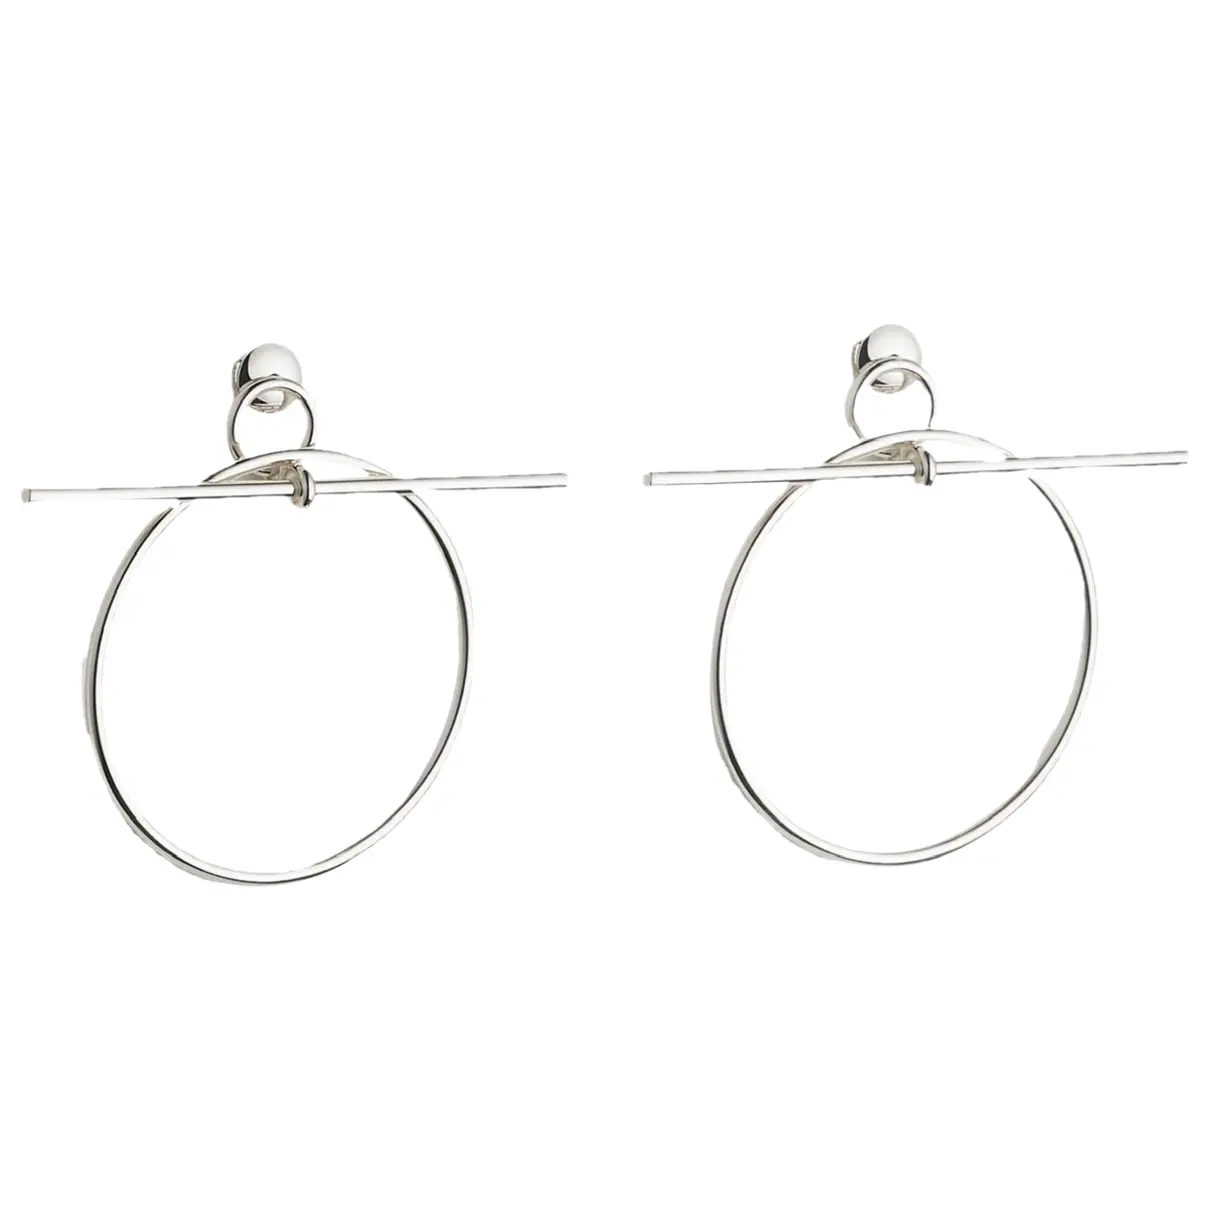 Loop silver earrings